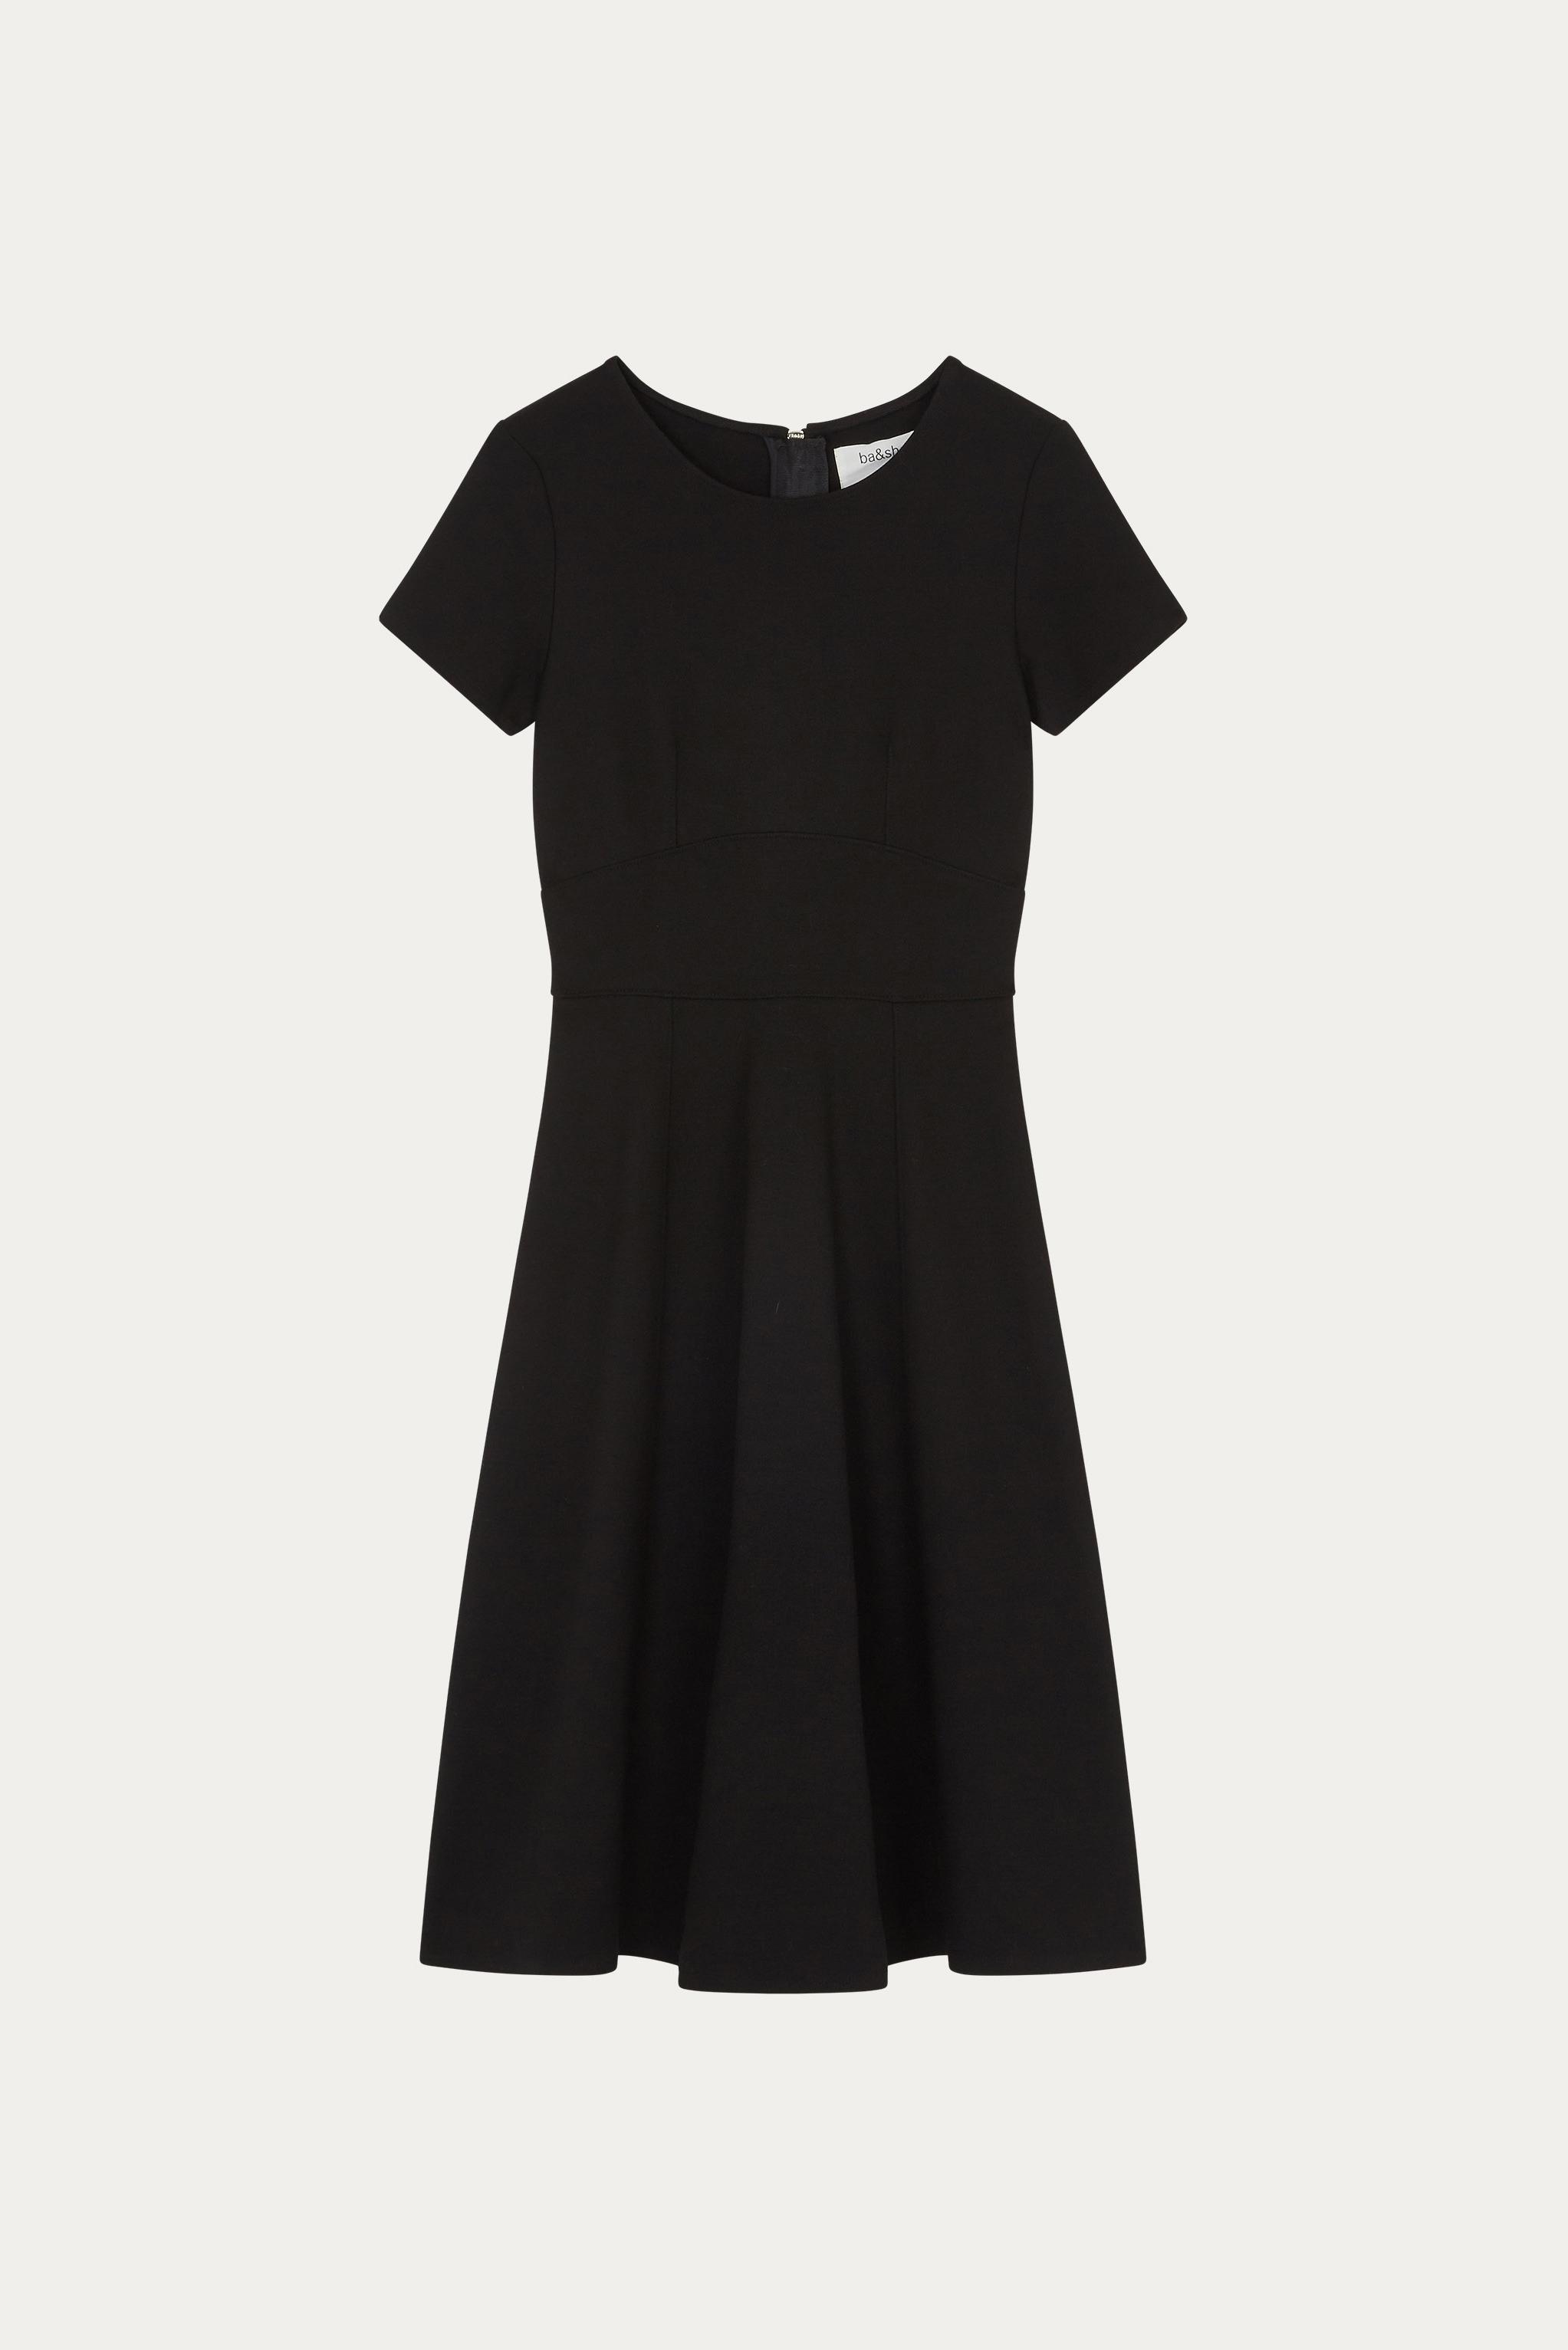 Ba&sh Maisy Dress in Black - Lyst